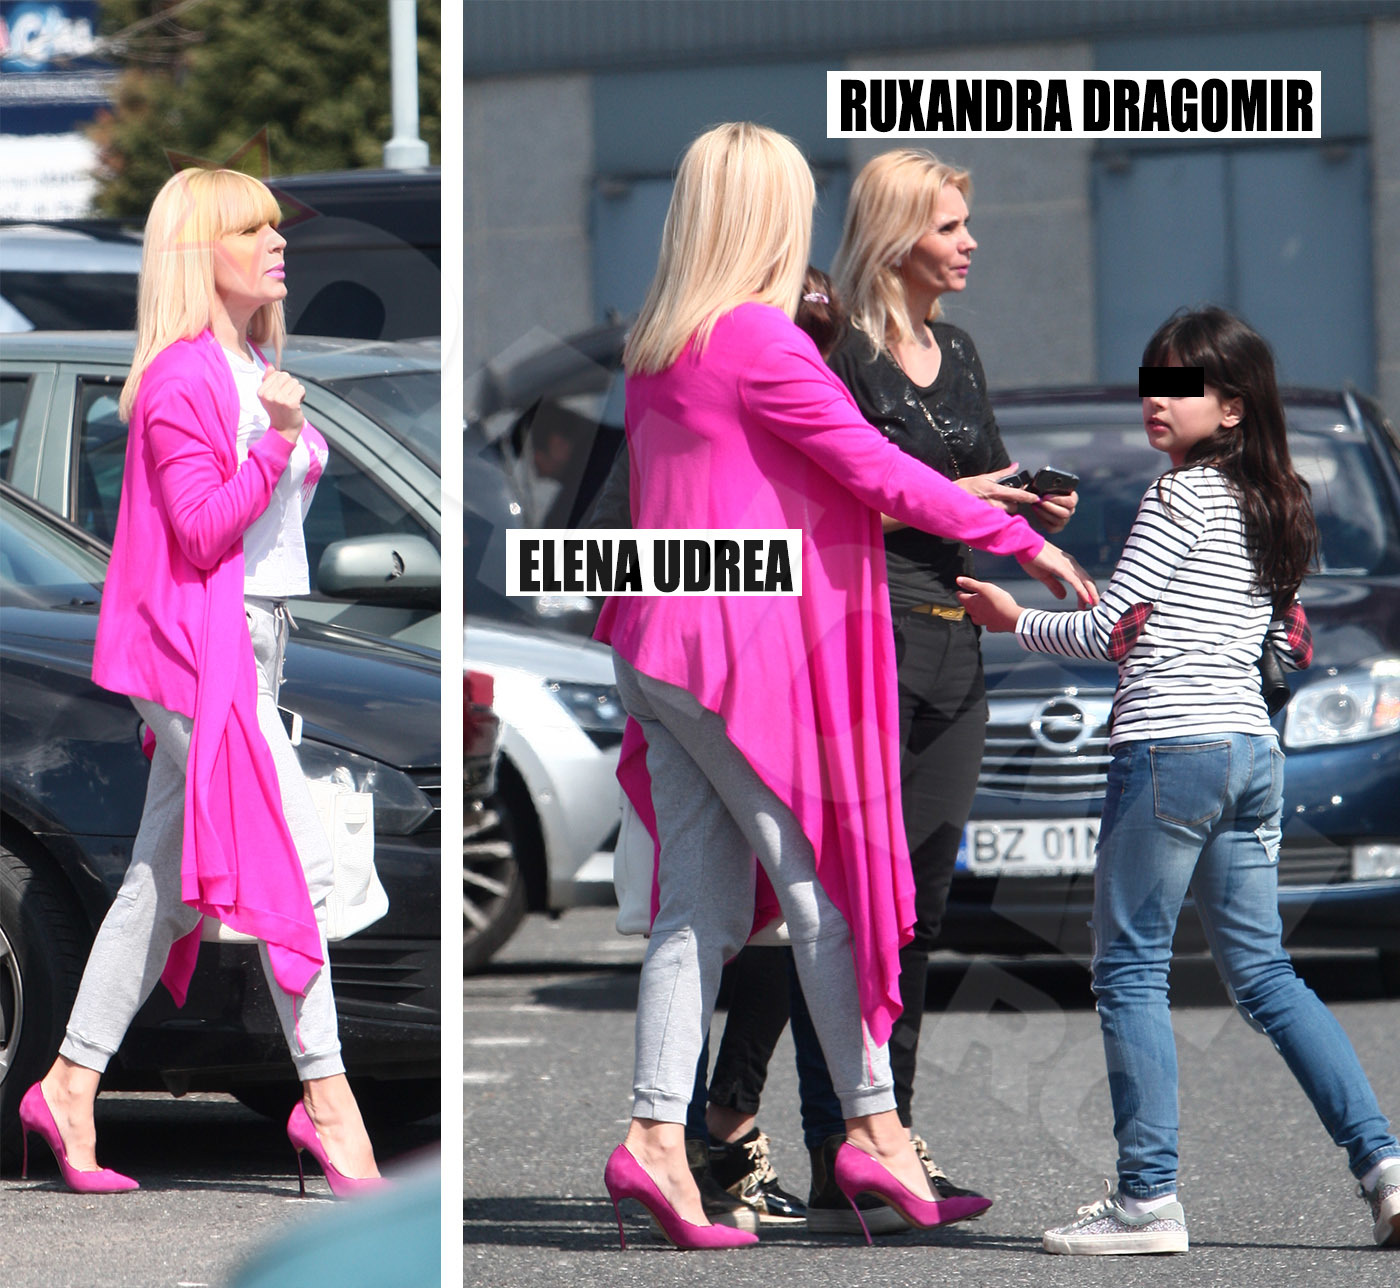 După ce s-au plimbat prin parc, Elena Udrea, împreună cu Ruxandra Dragomir au mers la mall.